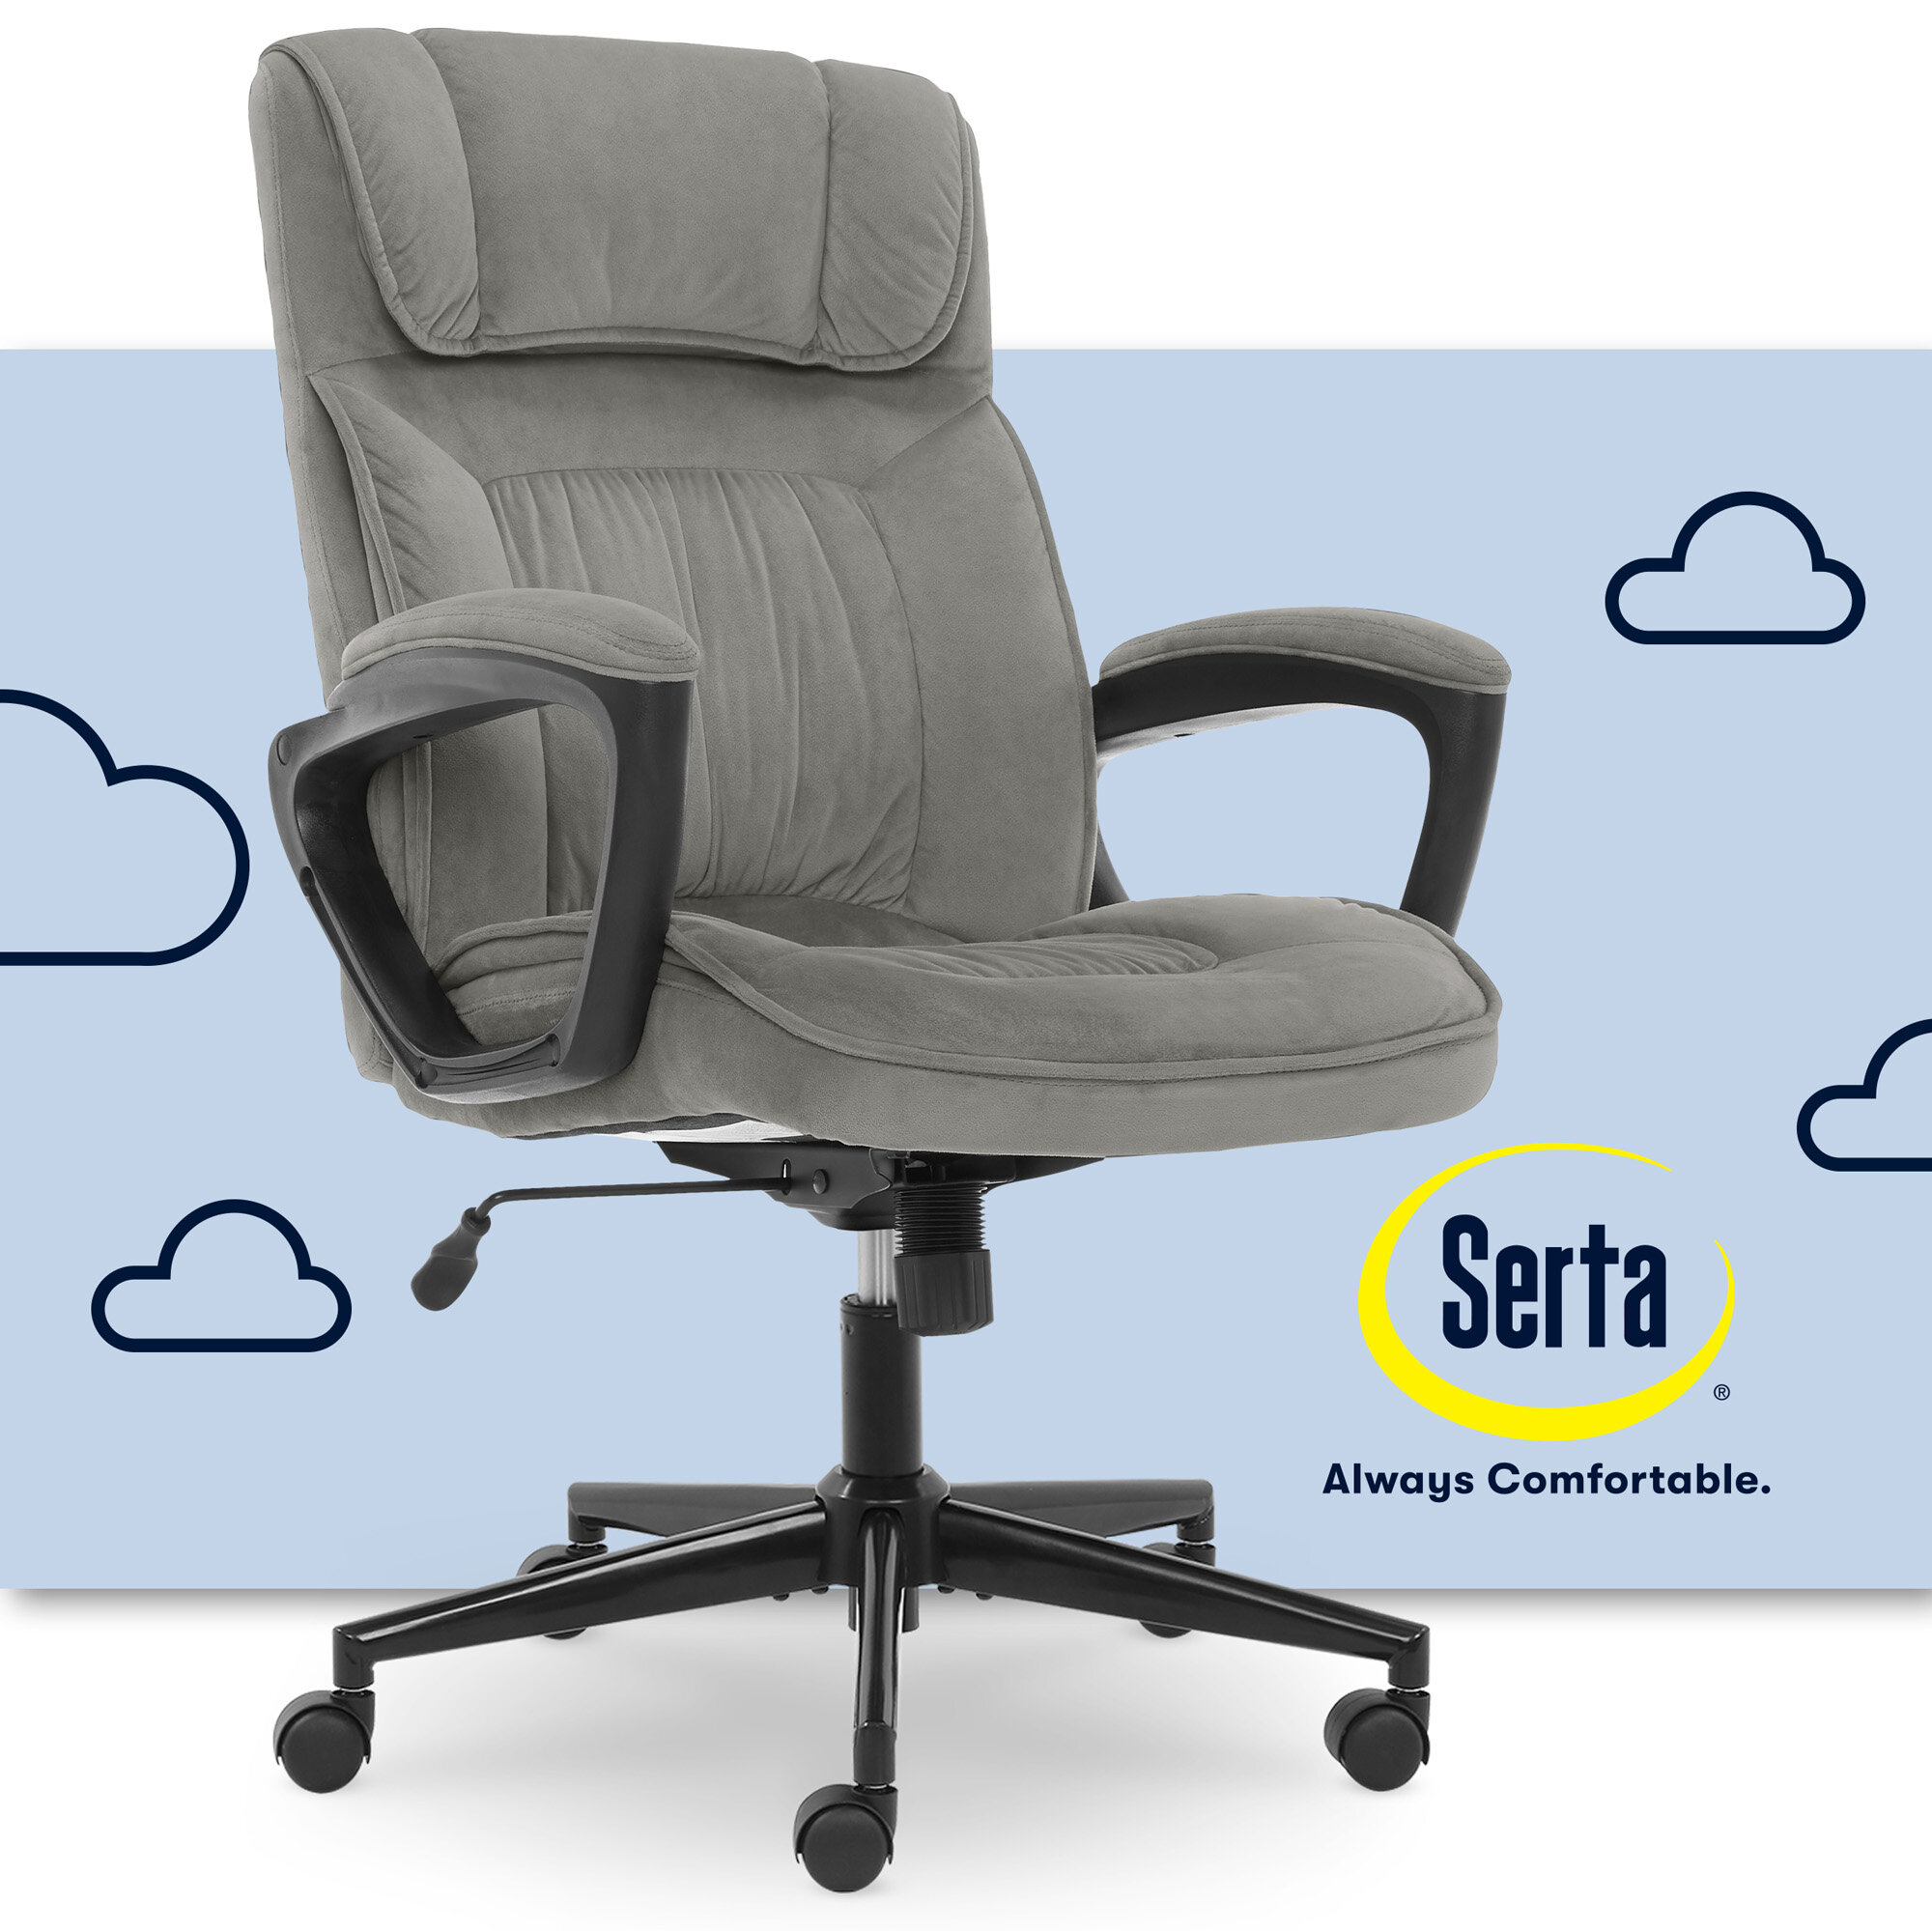 https://assets.wfcdn.com/im/34906219/compr-r85/1762/176299030/serta-hannah-executive-ergonomic-office-chair-with-lumbar-support-and-pillowed-headrest.jpg